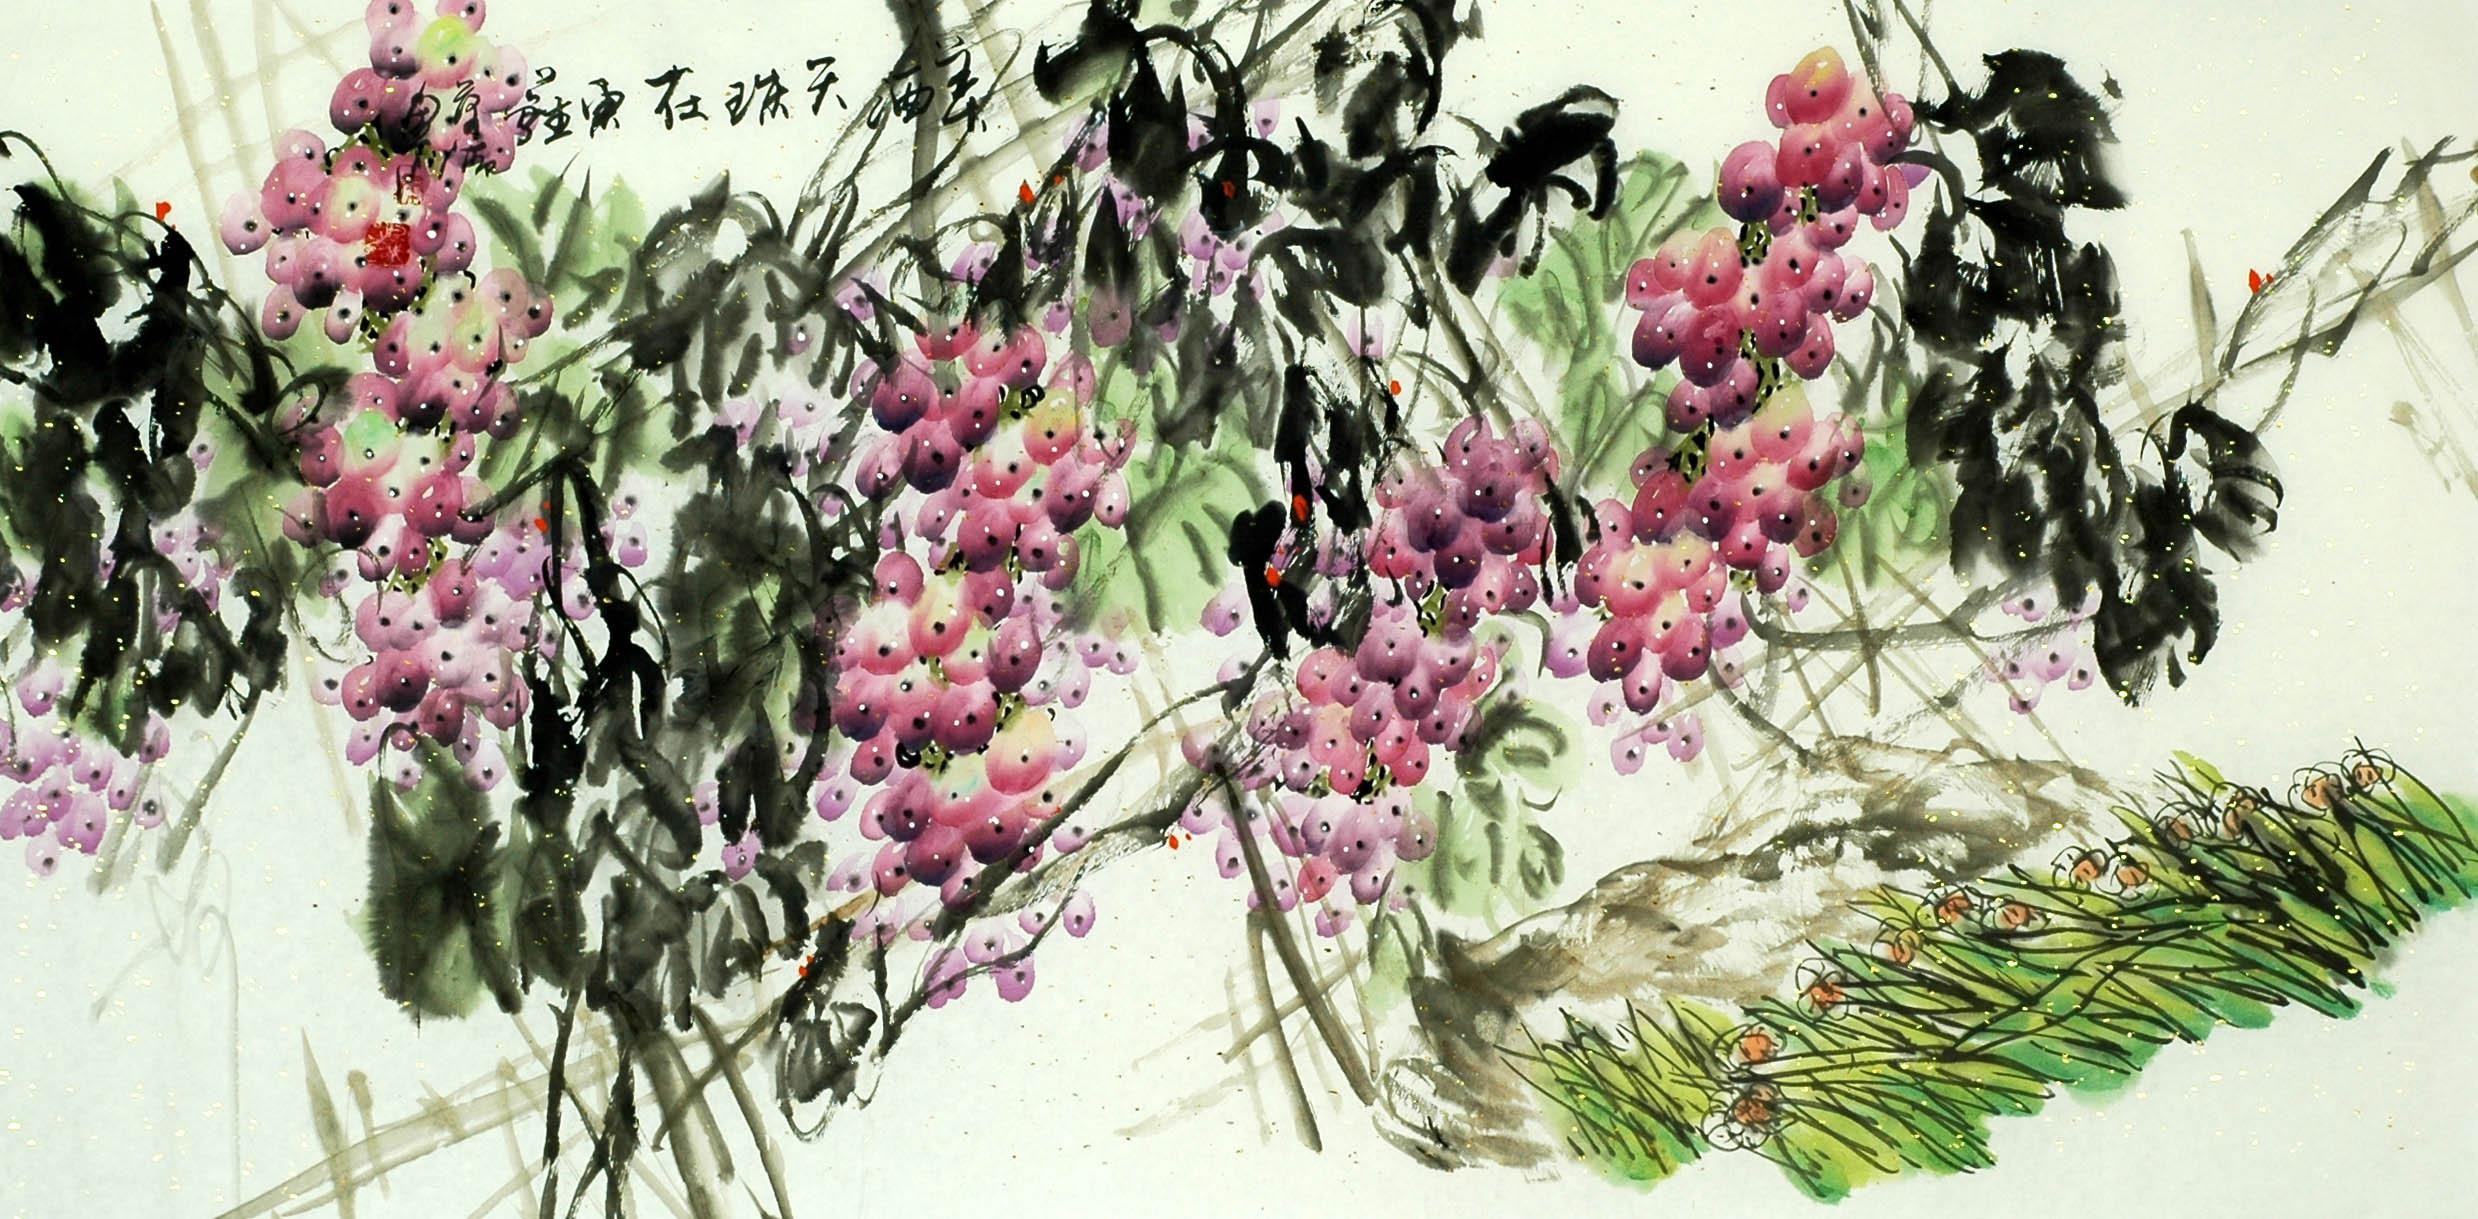 Chinese Grapes Painting - CNAG008047